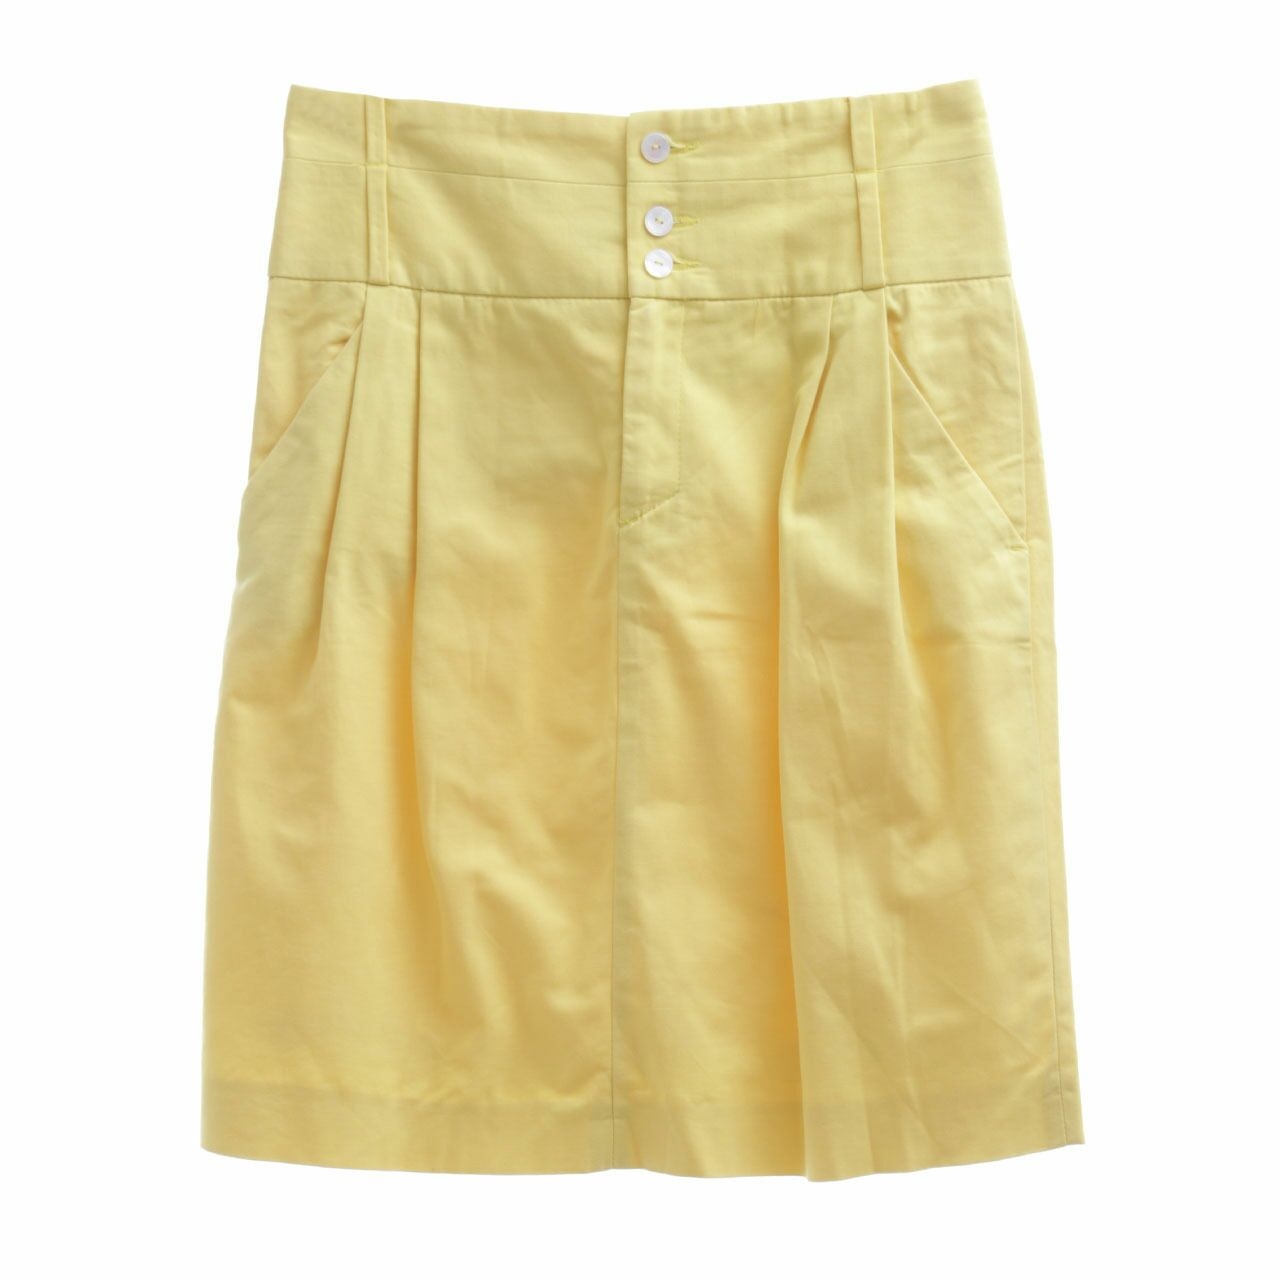 Zara Yellow Mini Skirt